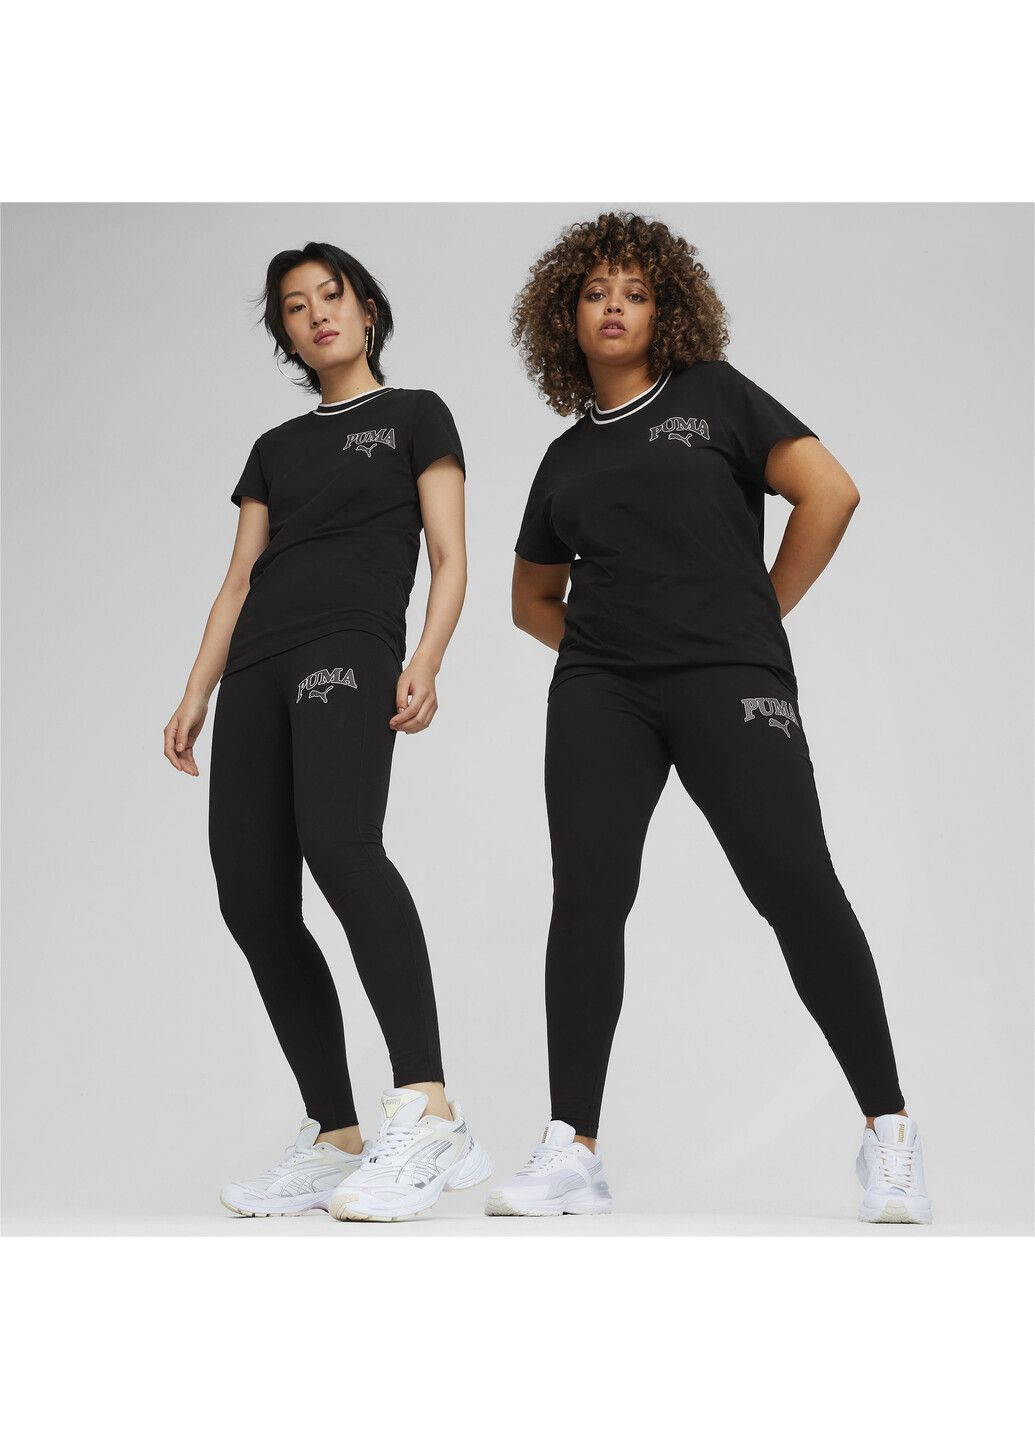 Черные демисезонные леггинсы squad women's leggings Puma